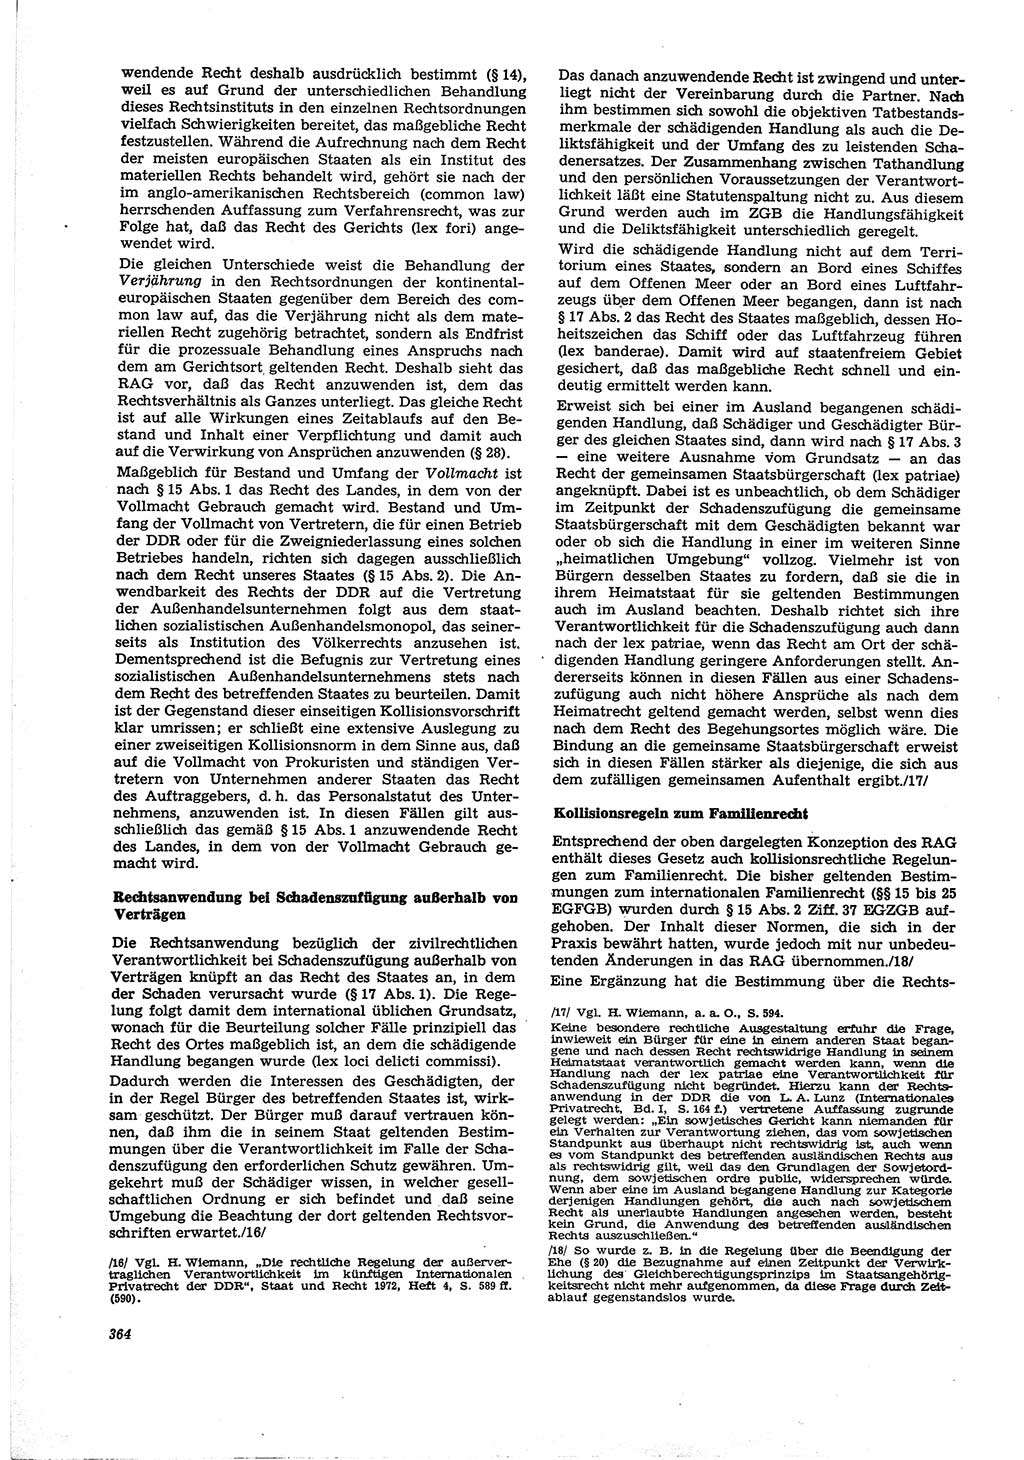 Neue Justiz (NJ), Zeitschrift für Recht und Rechtswissenschaft [Deutsche Demokratische Republik (DDR)], 30. Jahrgang 1976, Seite 364 (NJ DDR 1976, S. 364)